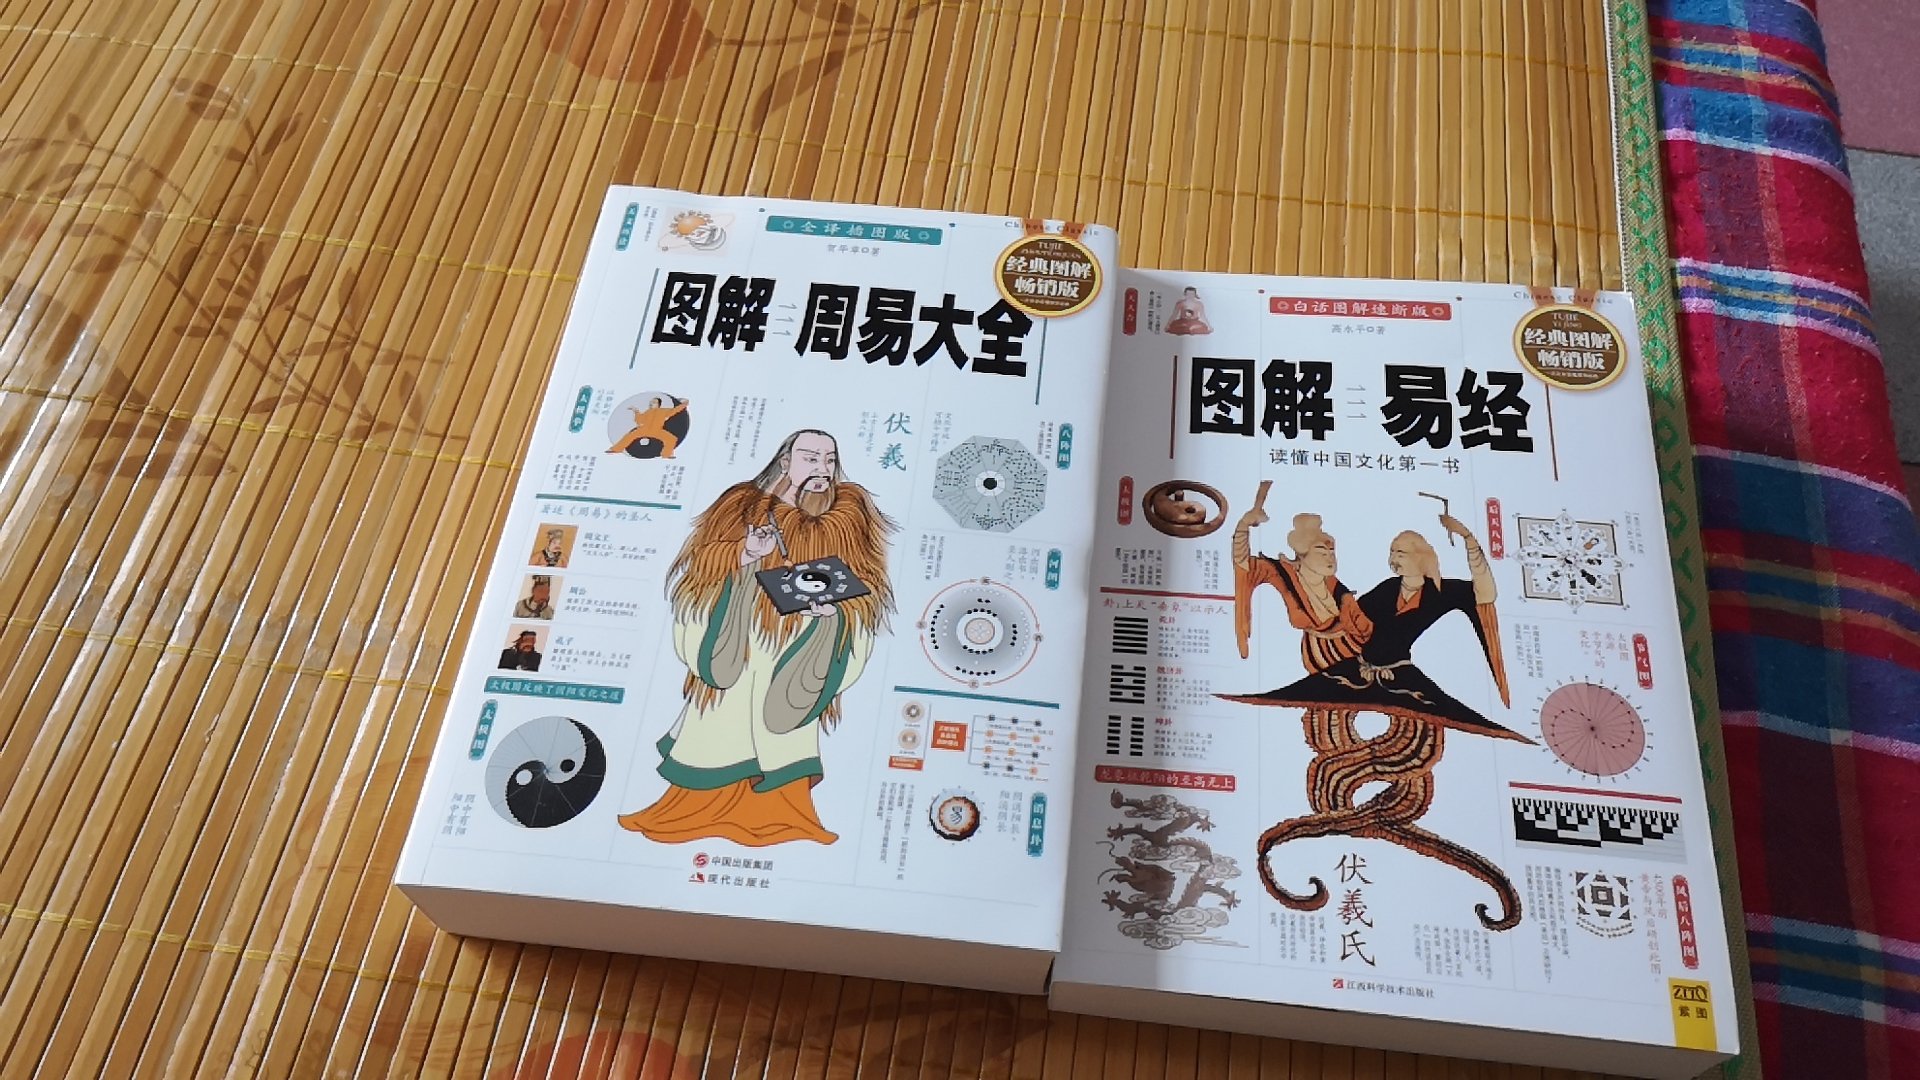 书已经收到了，看见很好，准备仔细阅读，学习中华文化